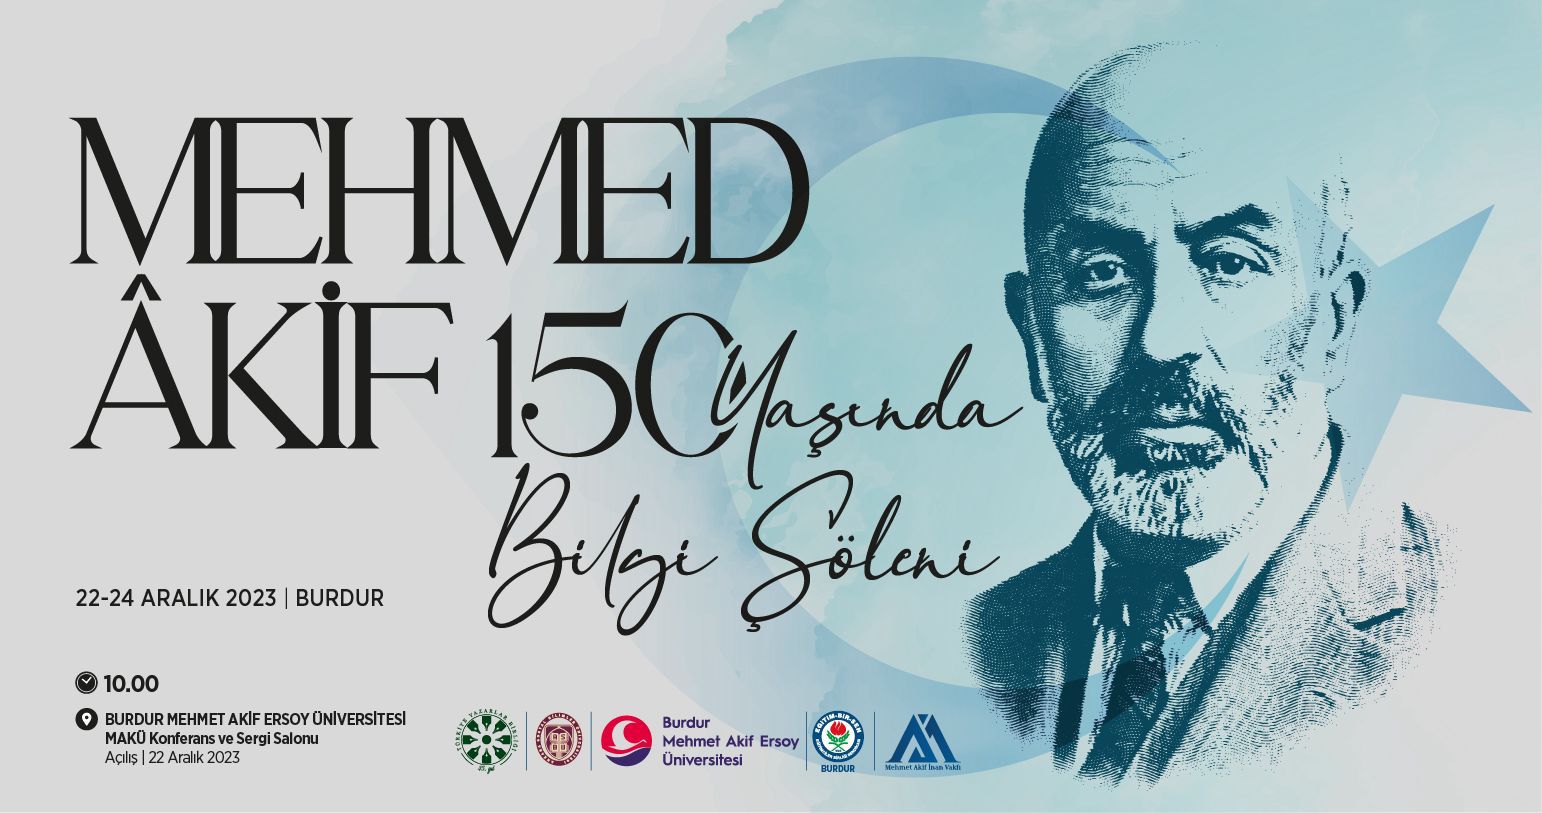 Mehmed Âkif 150 Yaşında Bilgi Şöleni Burdur’da yapılacak